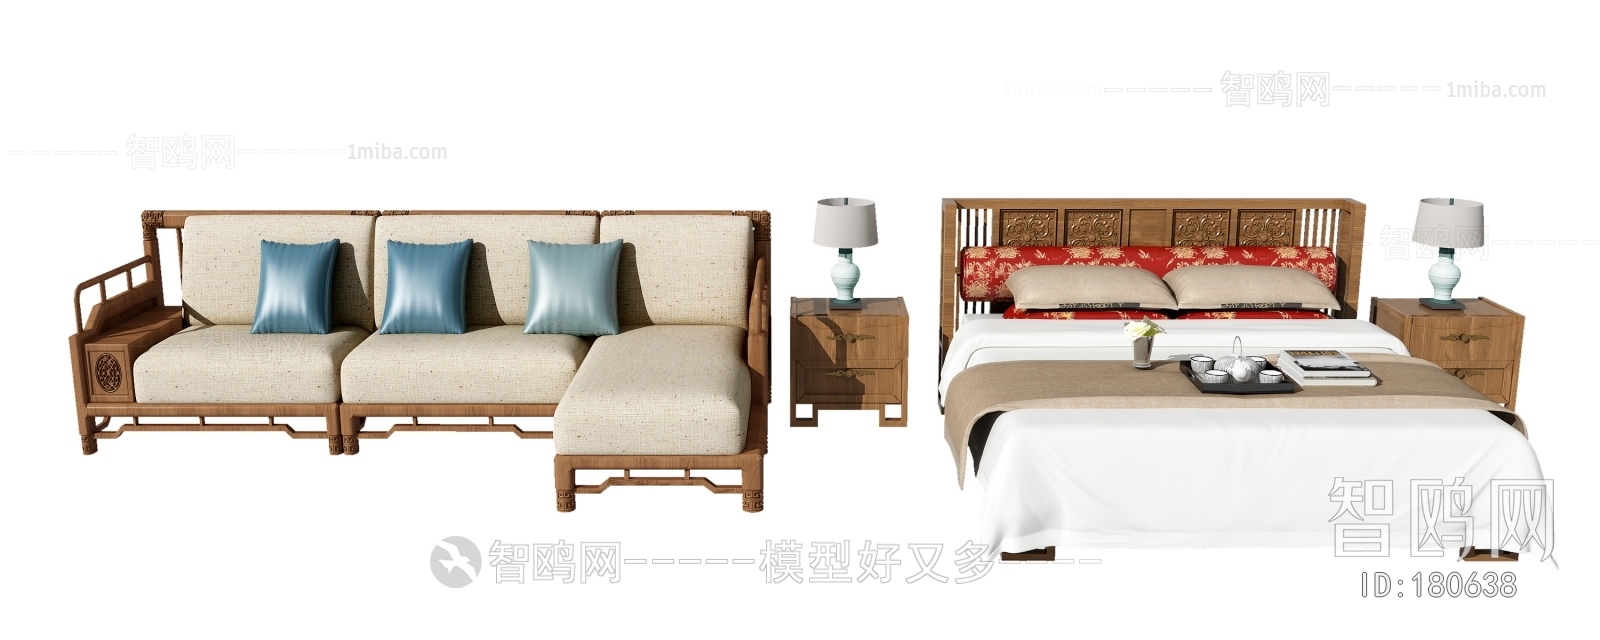 新中式双人床多人沙发